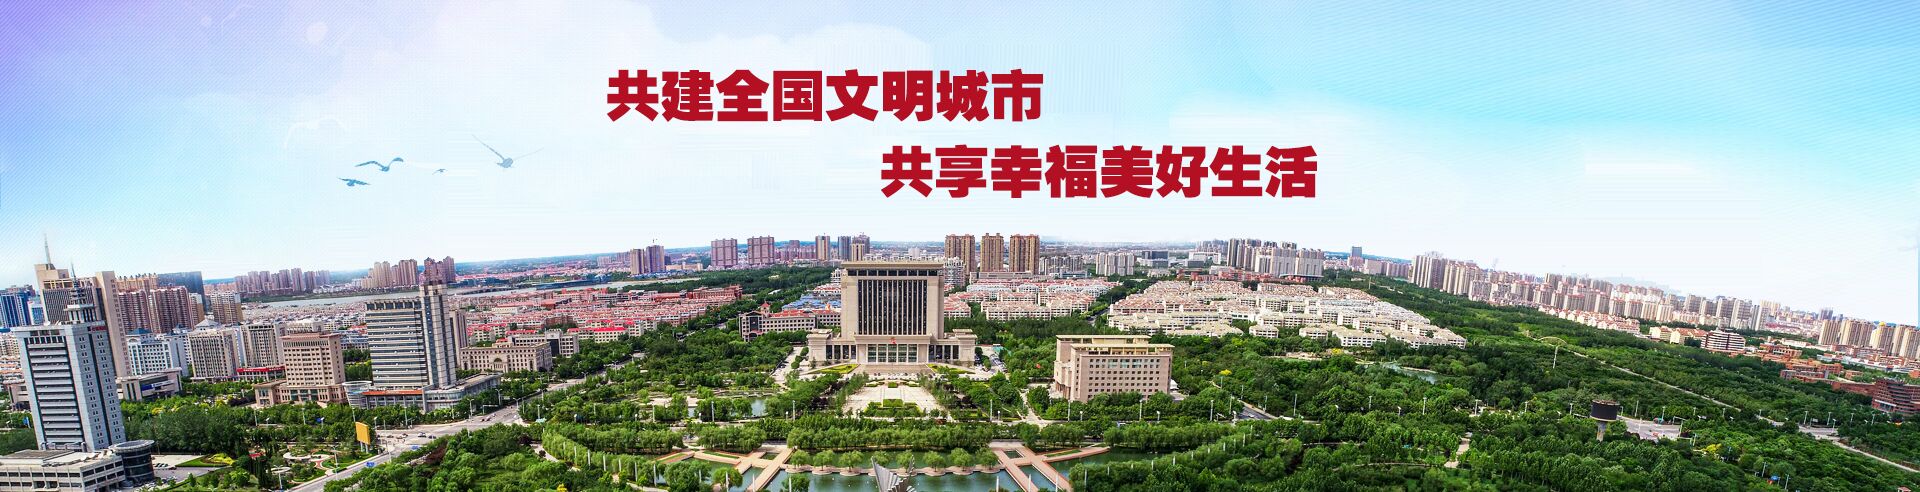 中国.滨州创建文明城市宣传专题